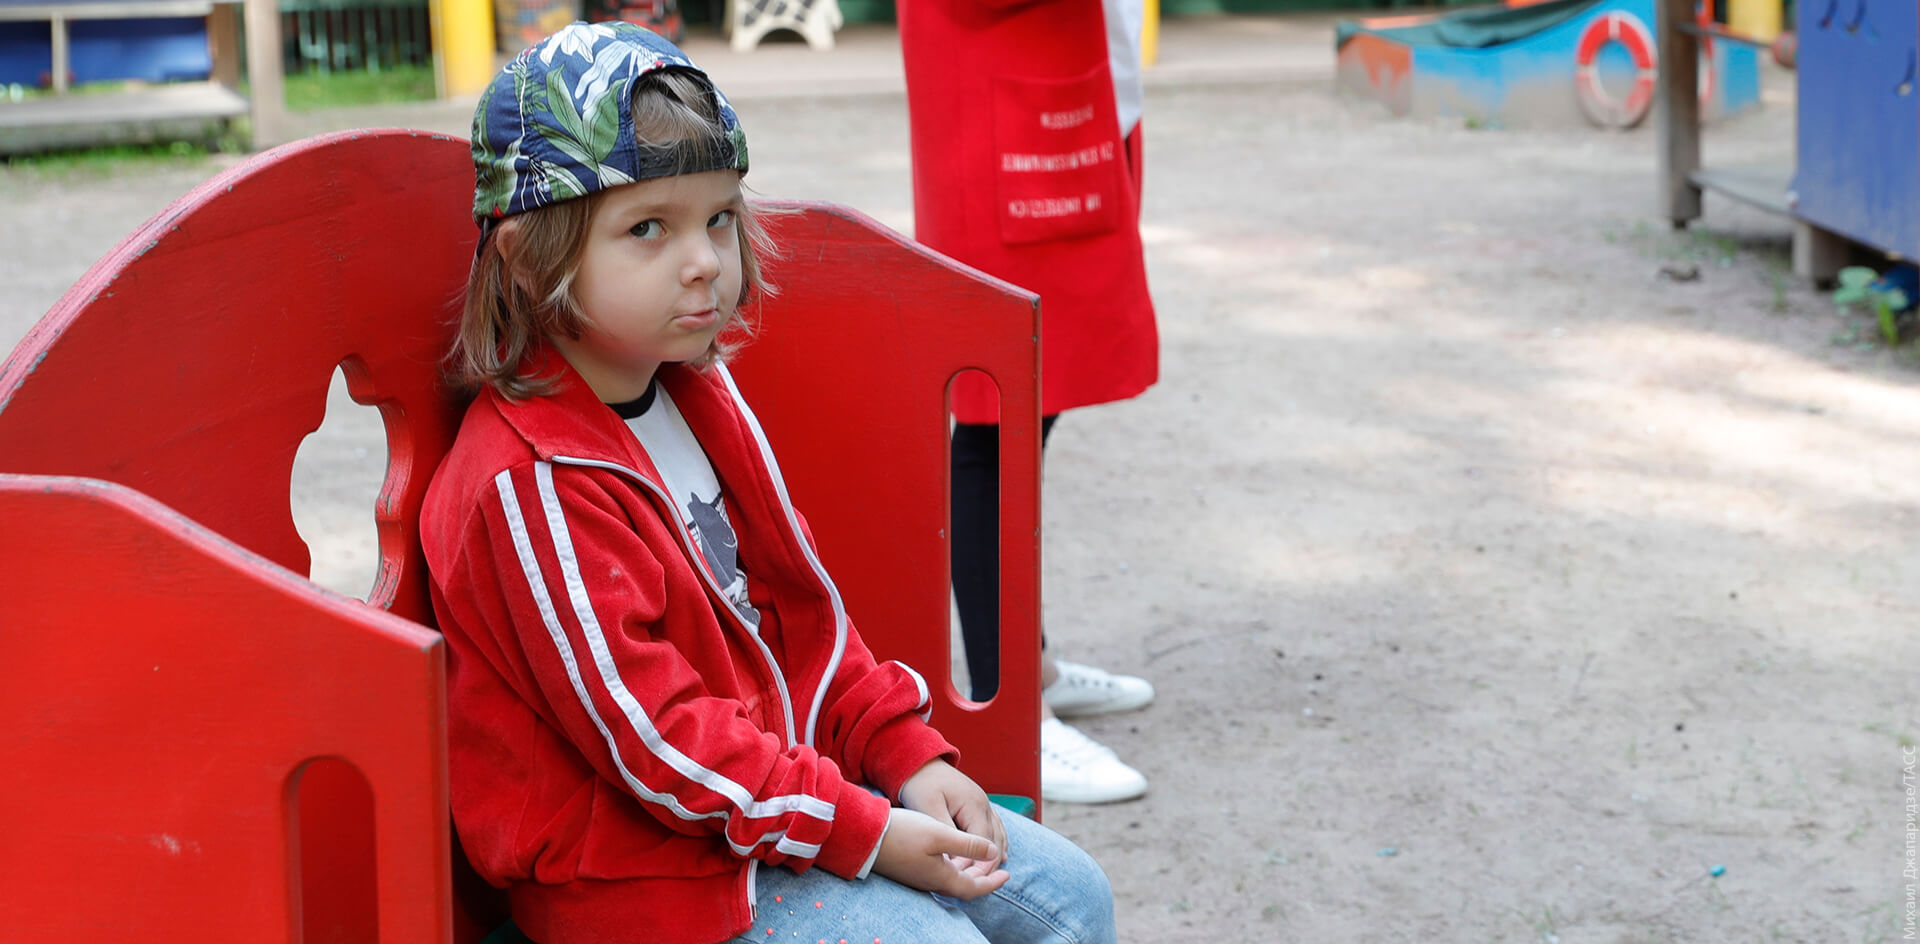 Оптимизация детства. В Москве закрывают детские сады